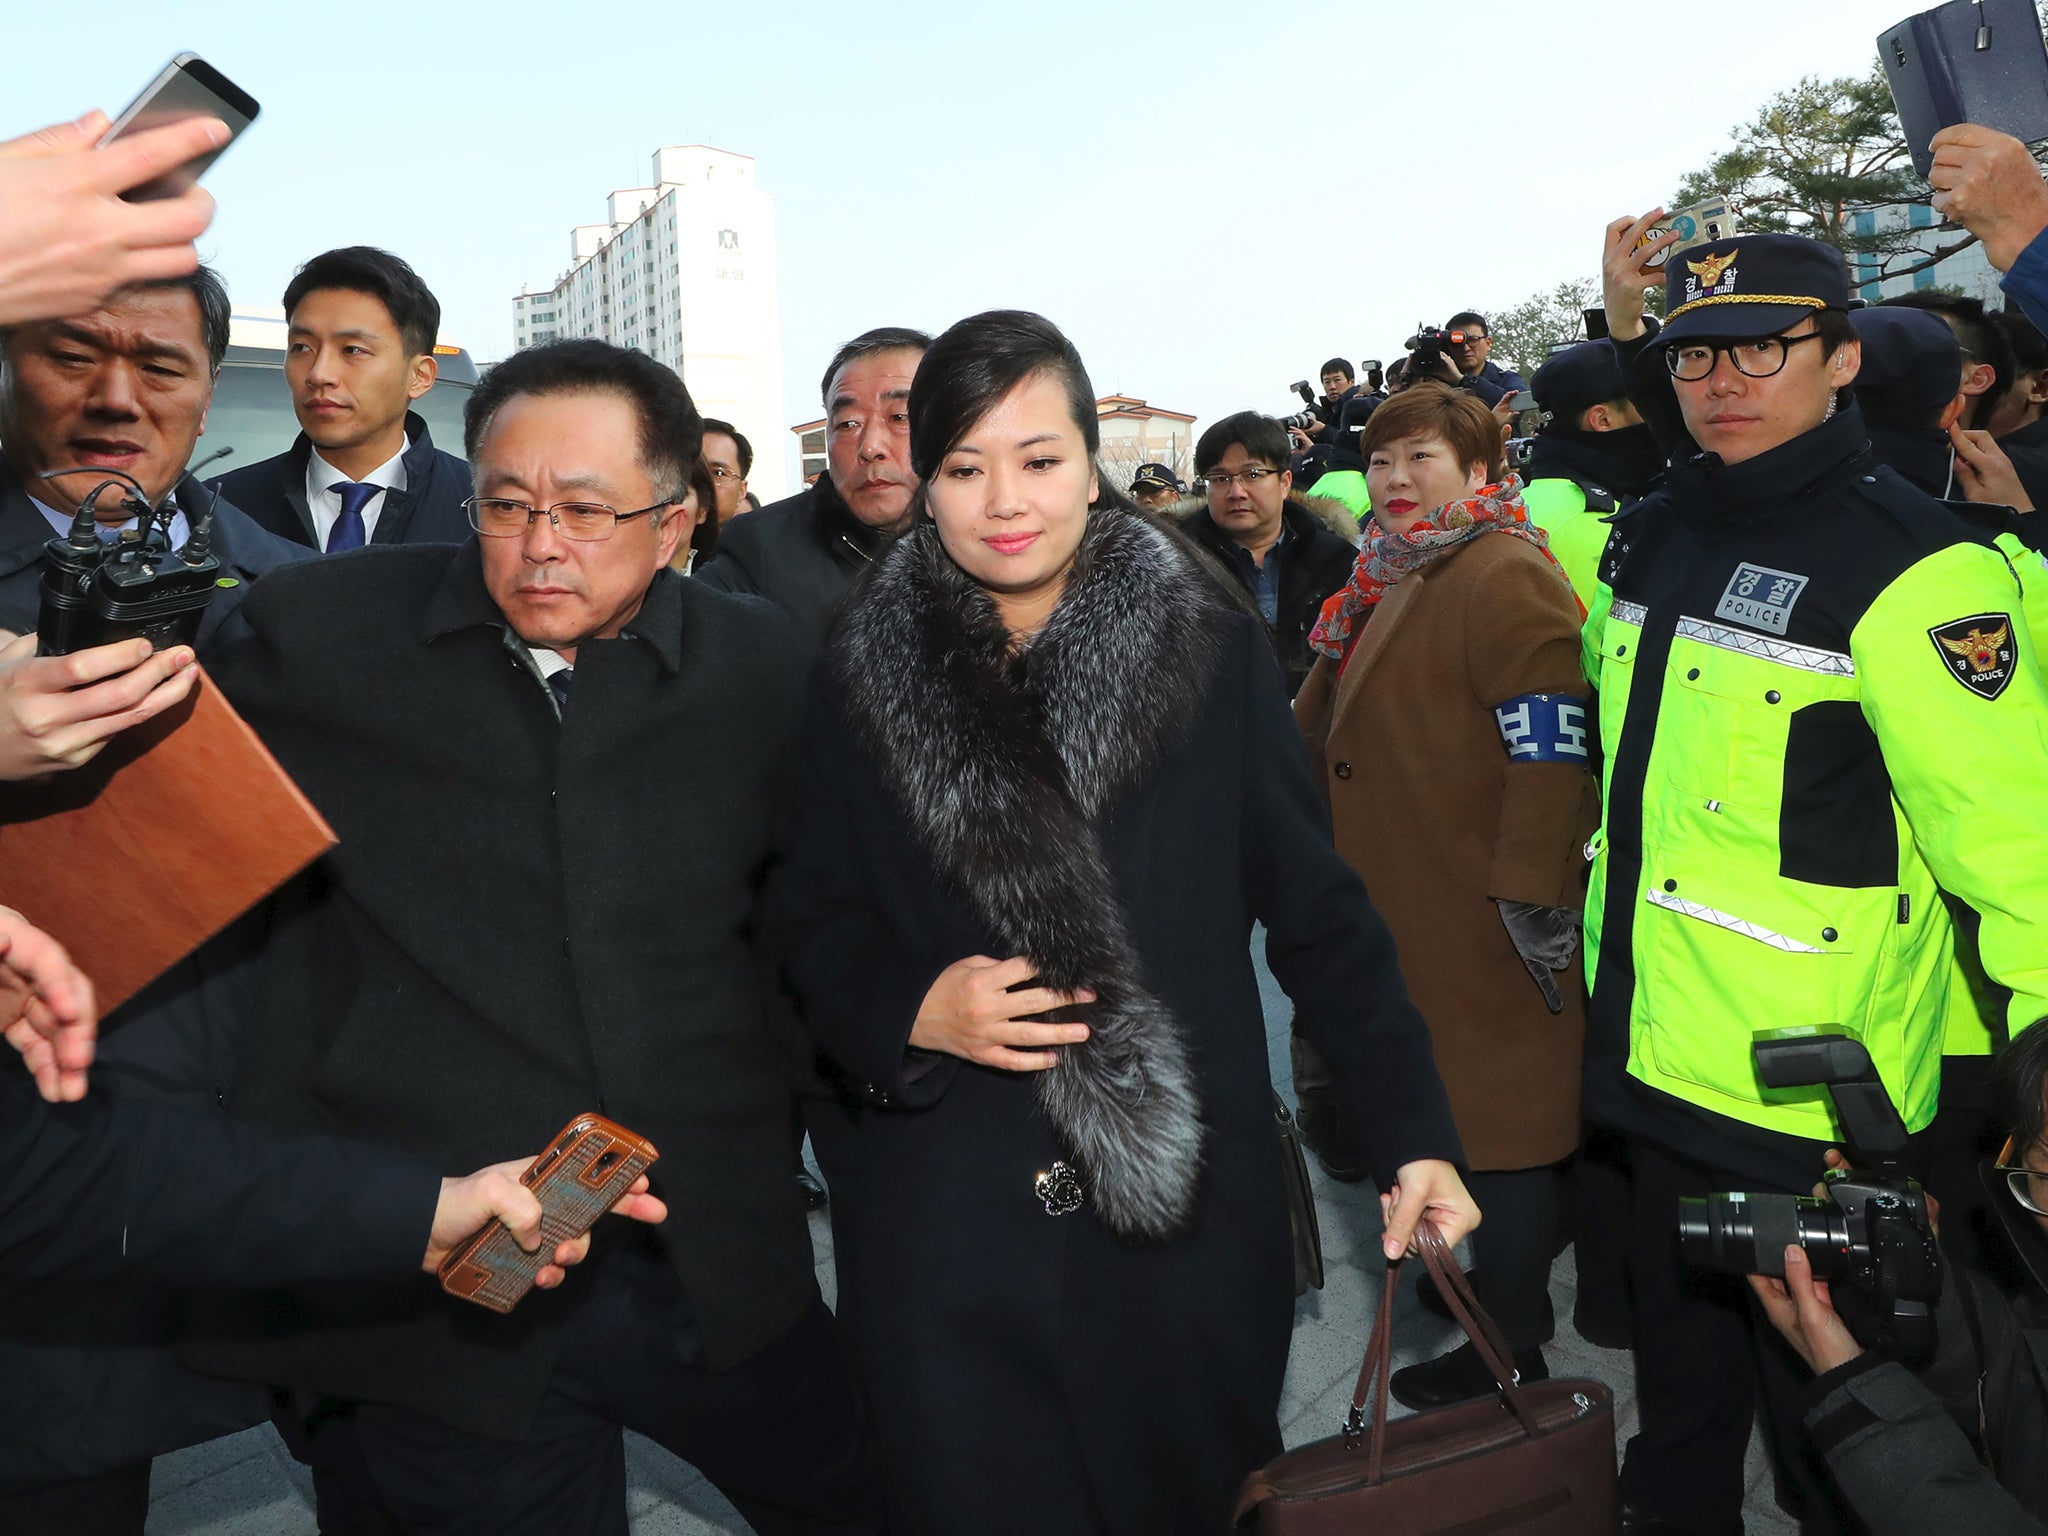 Singer Hyon Song-wol led a North Korean delegation to Seoul